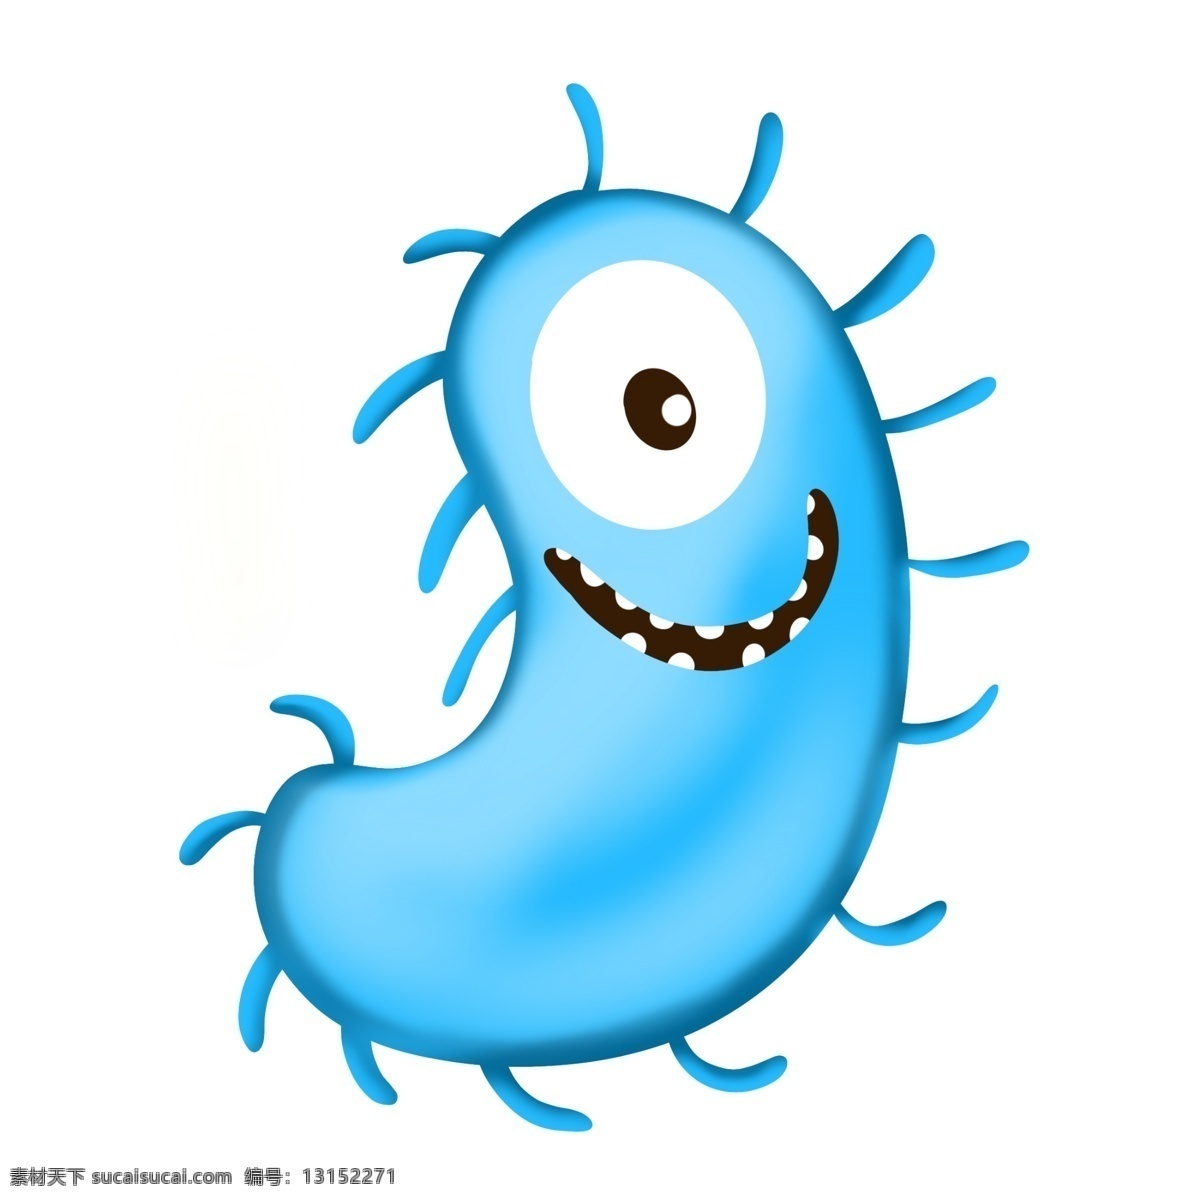 核糖体 细菌 插画 核糖体插画 卡通插画 细菌插画 病菌 细胞膜 细胞质 单细胞生物